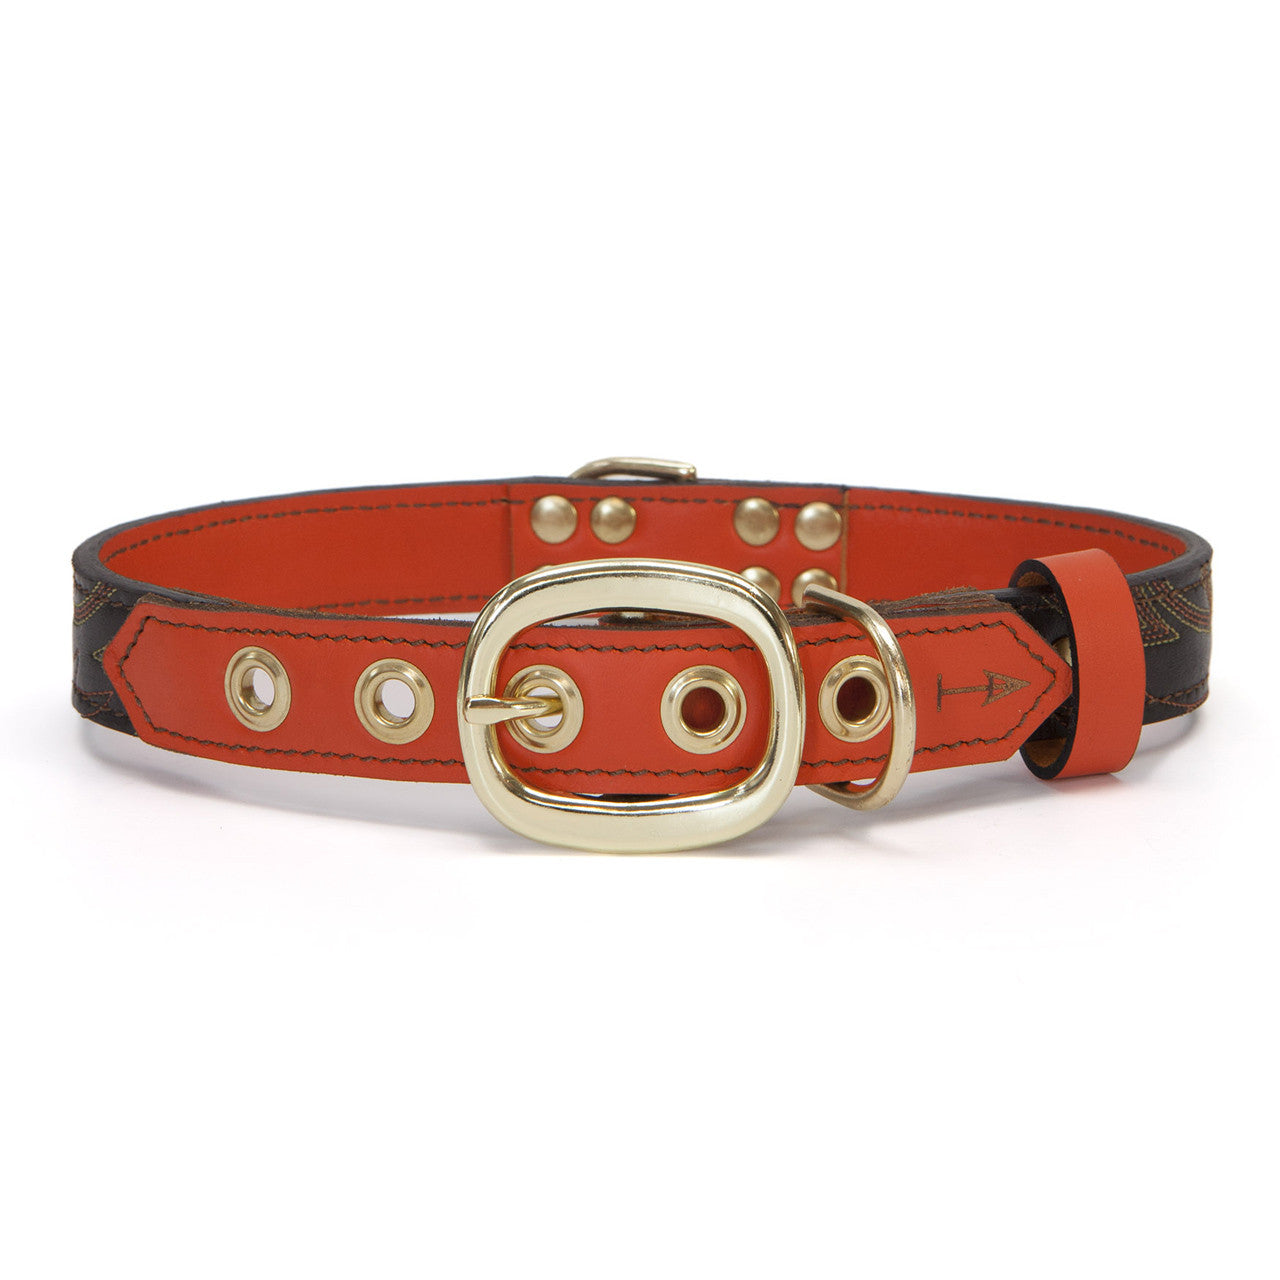 Orange Dog Collar with Dark Brown Leather + Orange Crest Stitching (back view)